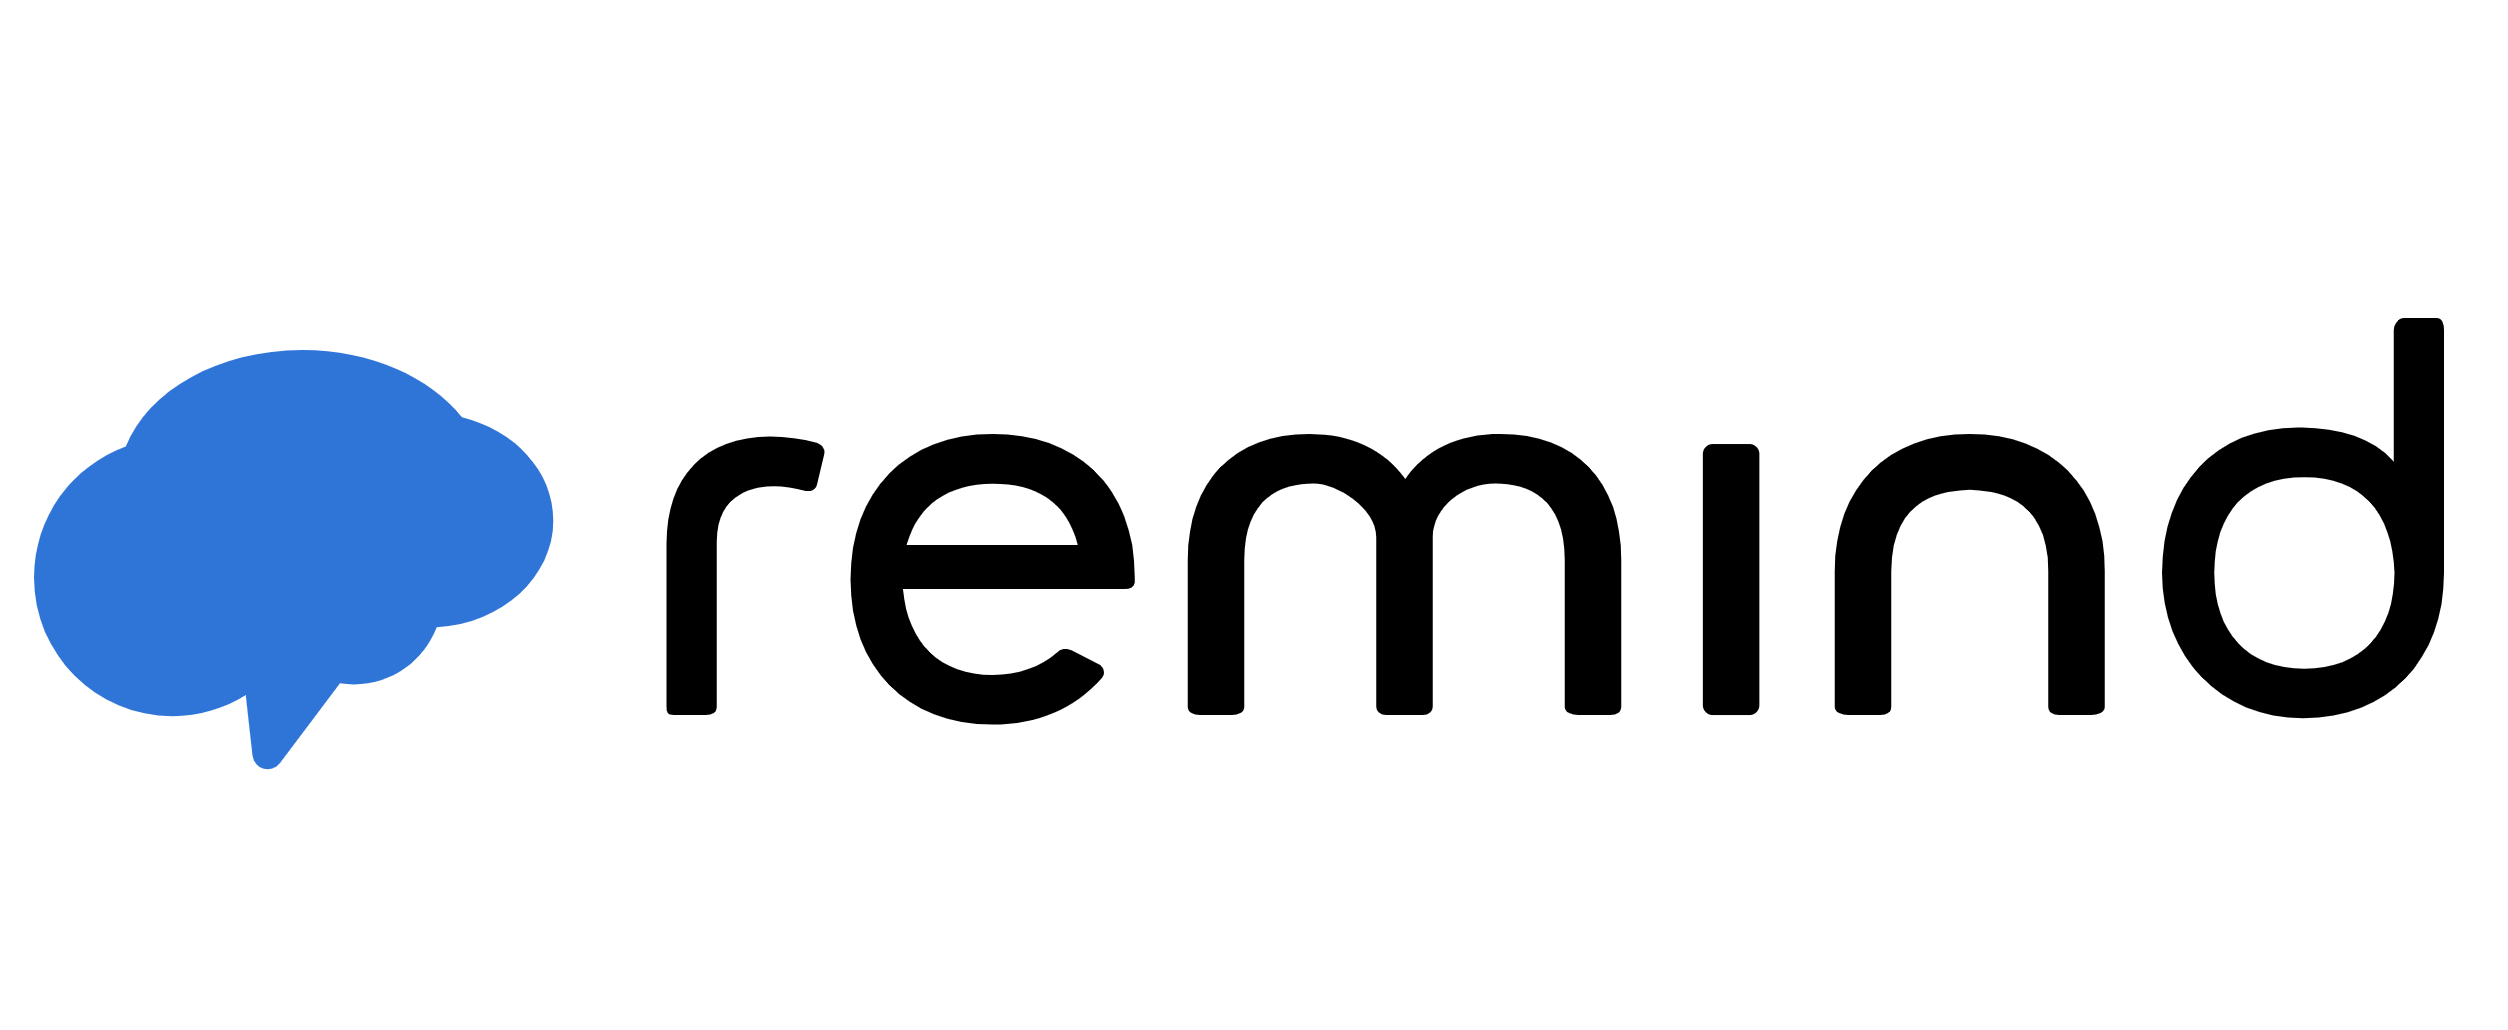 remind logo